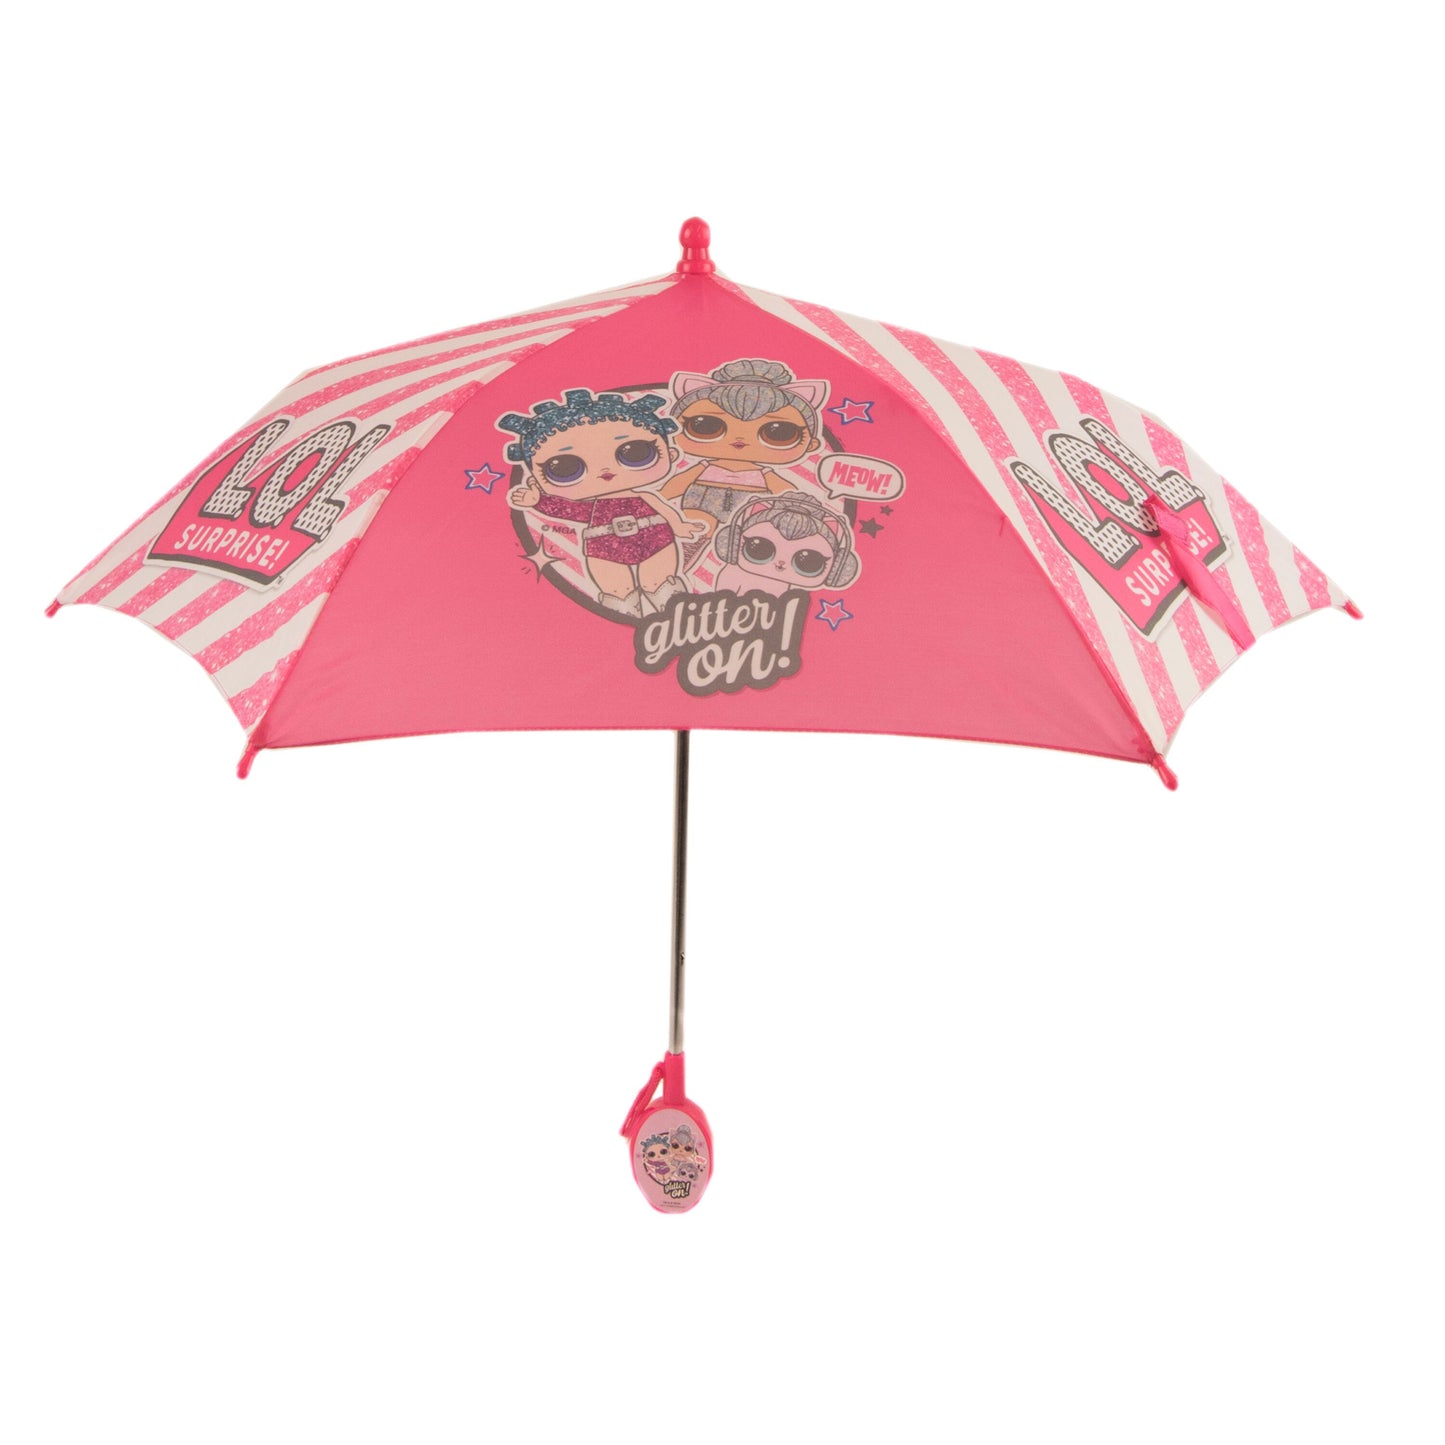 L.O.L Surprise Glitter Stripes Umbrella - Lightweight Umbrella Accessory for Kids, Rain or Shine Cover, Toddler